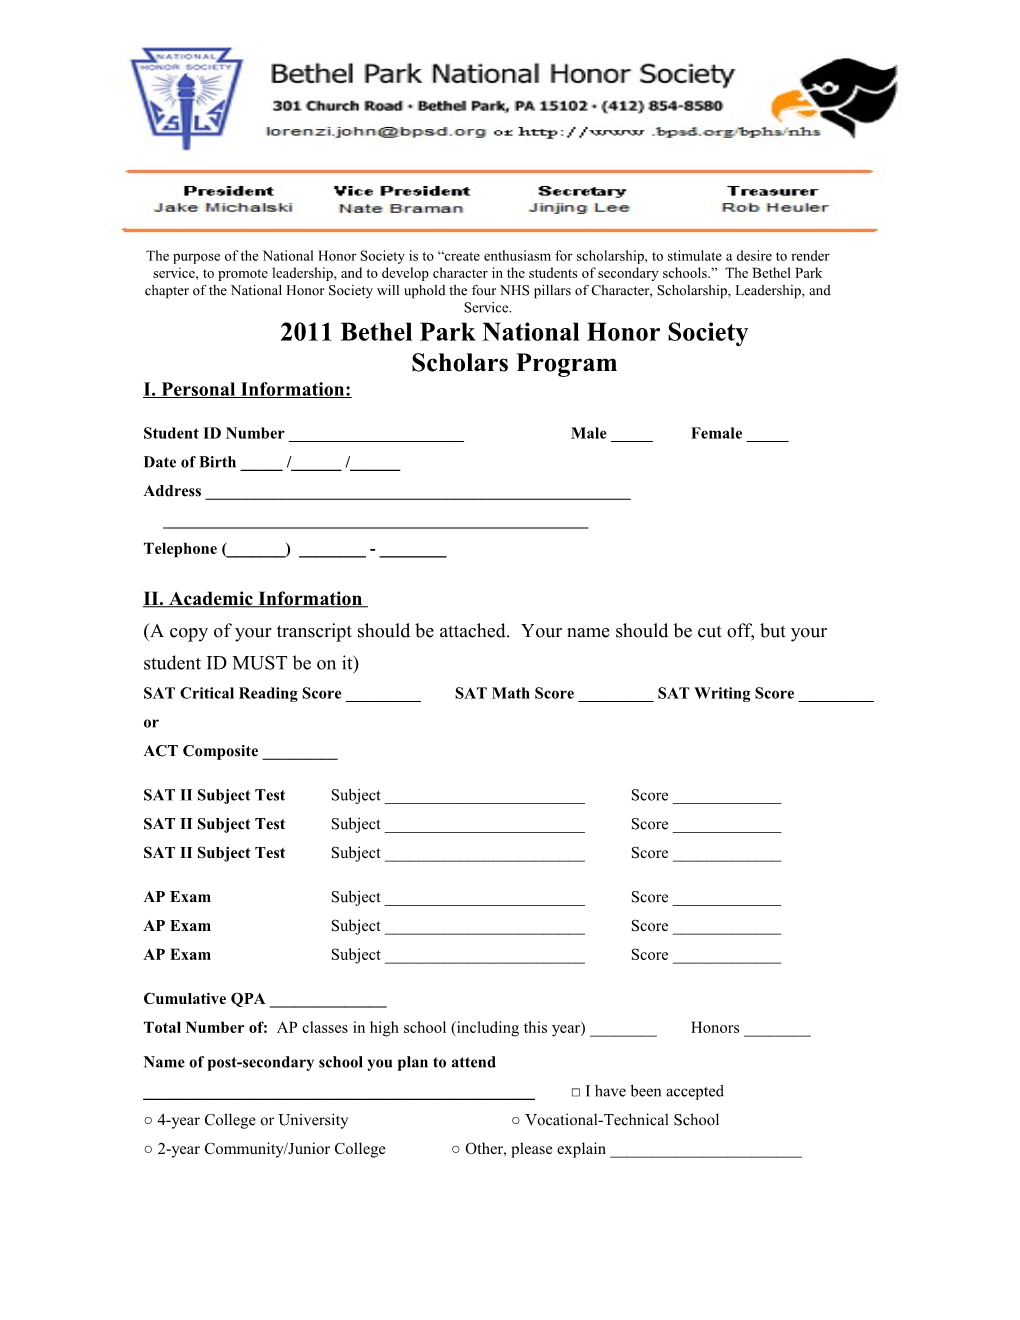 2011 Bethel Park National Honor Society